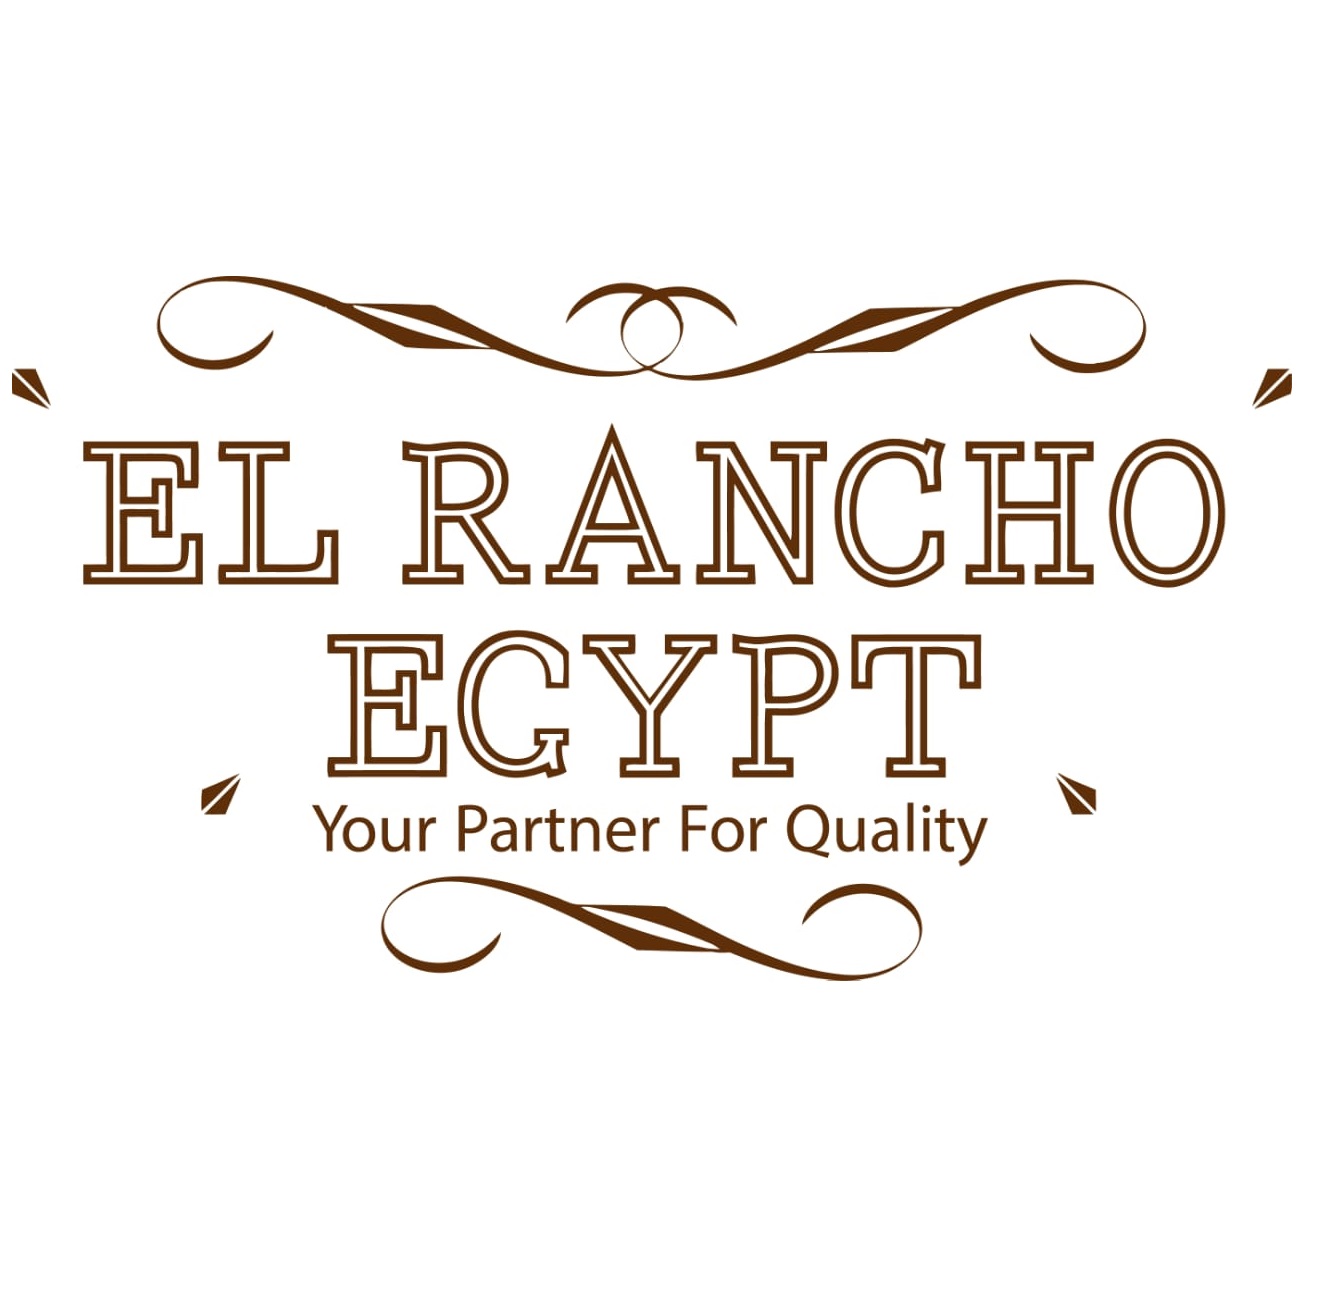 Elrancho Egypt